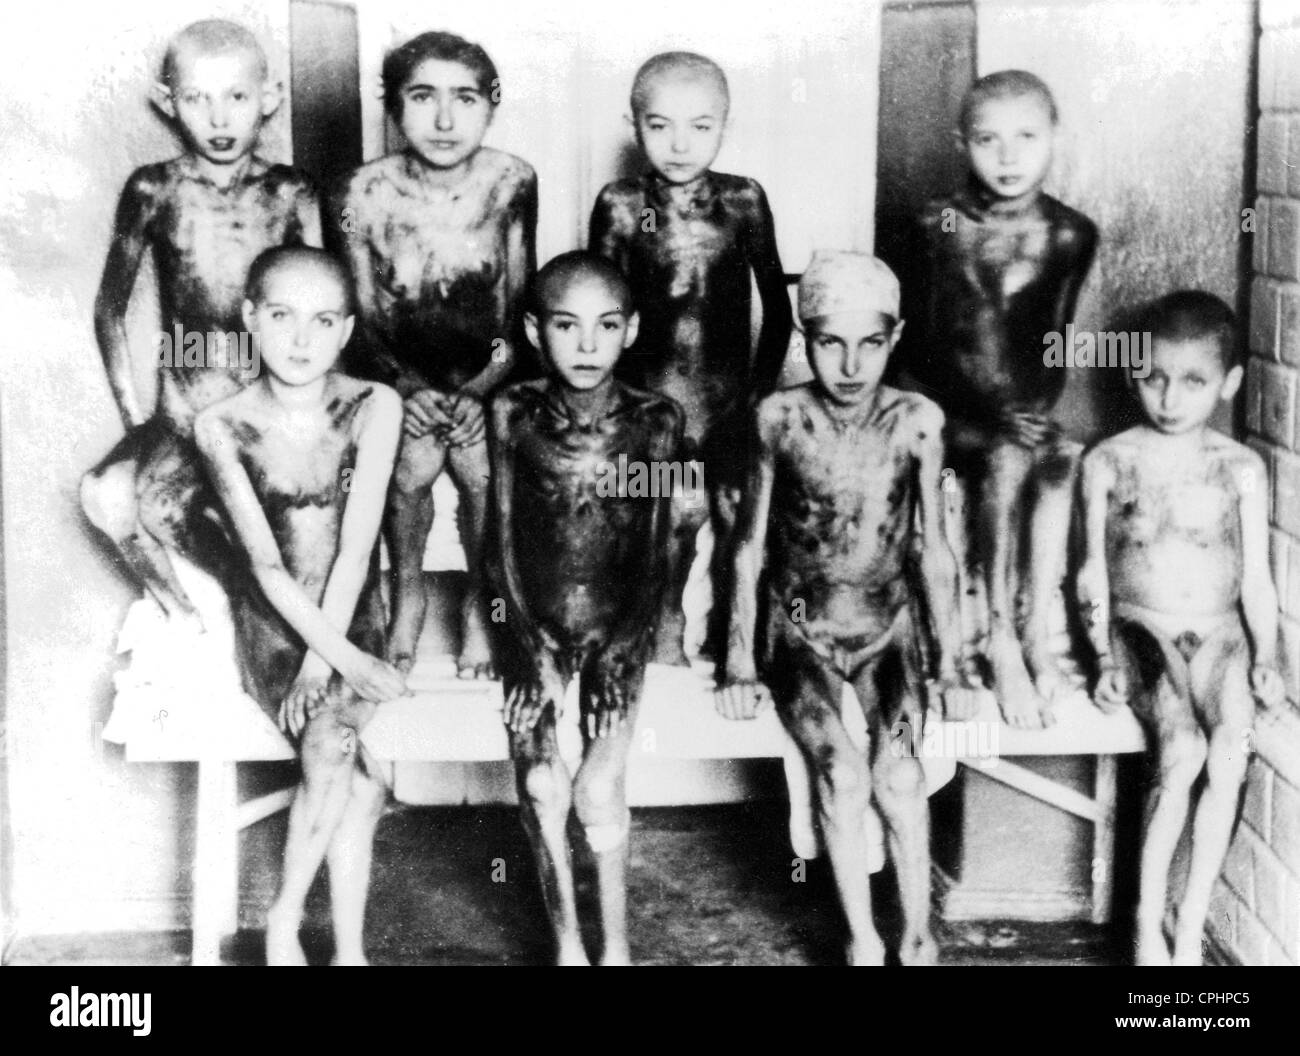 Les enfants victimes d'expériences médicales nazies au camp de concentration d'Auschwitz, Pologne, 1940-1945 (photo n/b) Banque D'Images